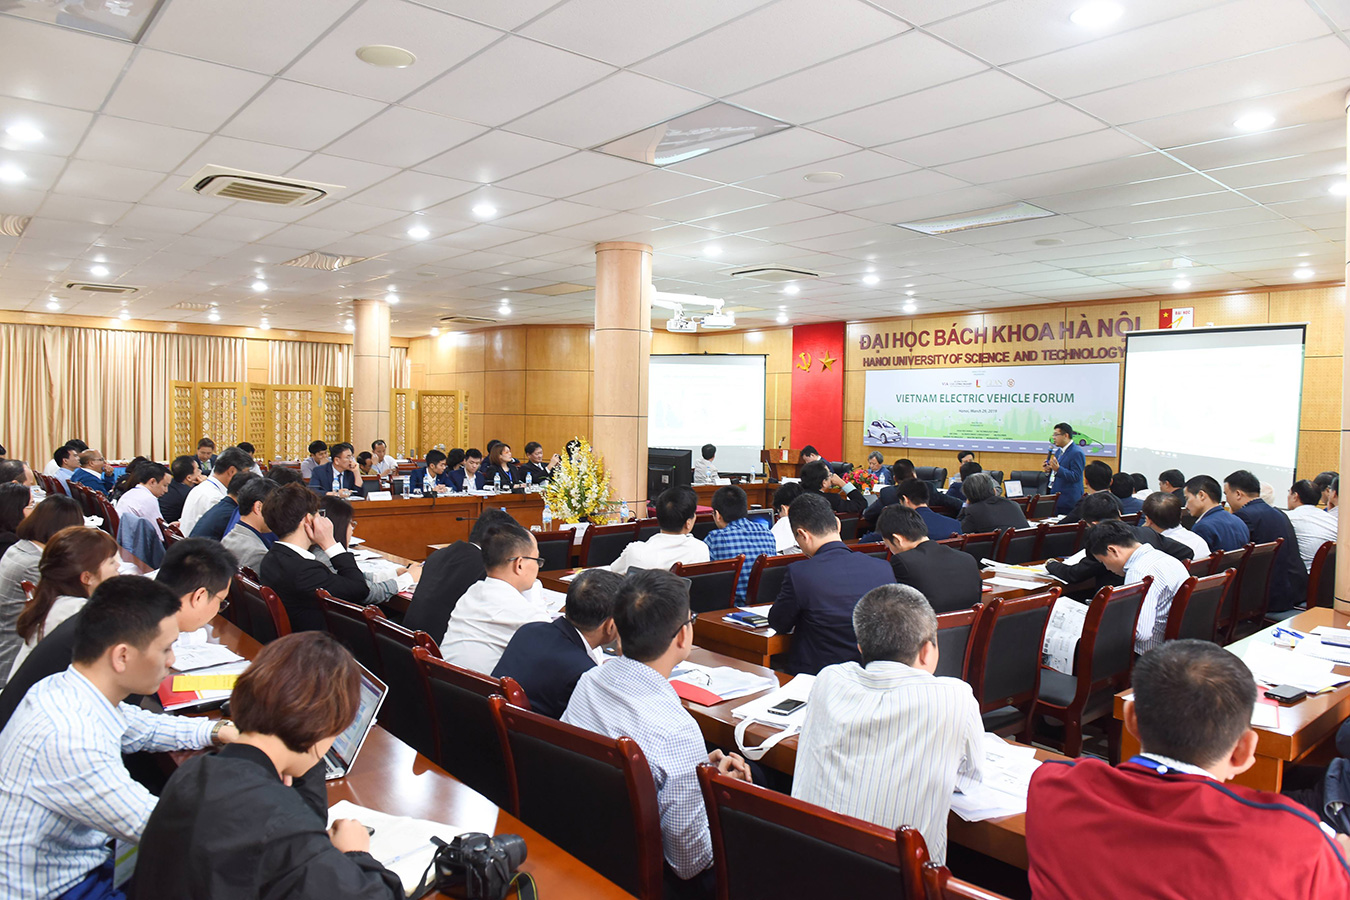 Tại Diễn đàn xe điện, nhiều người đã đề xuất thành lập Hội xe điện Việt Nam